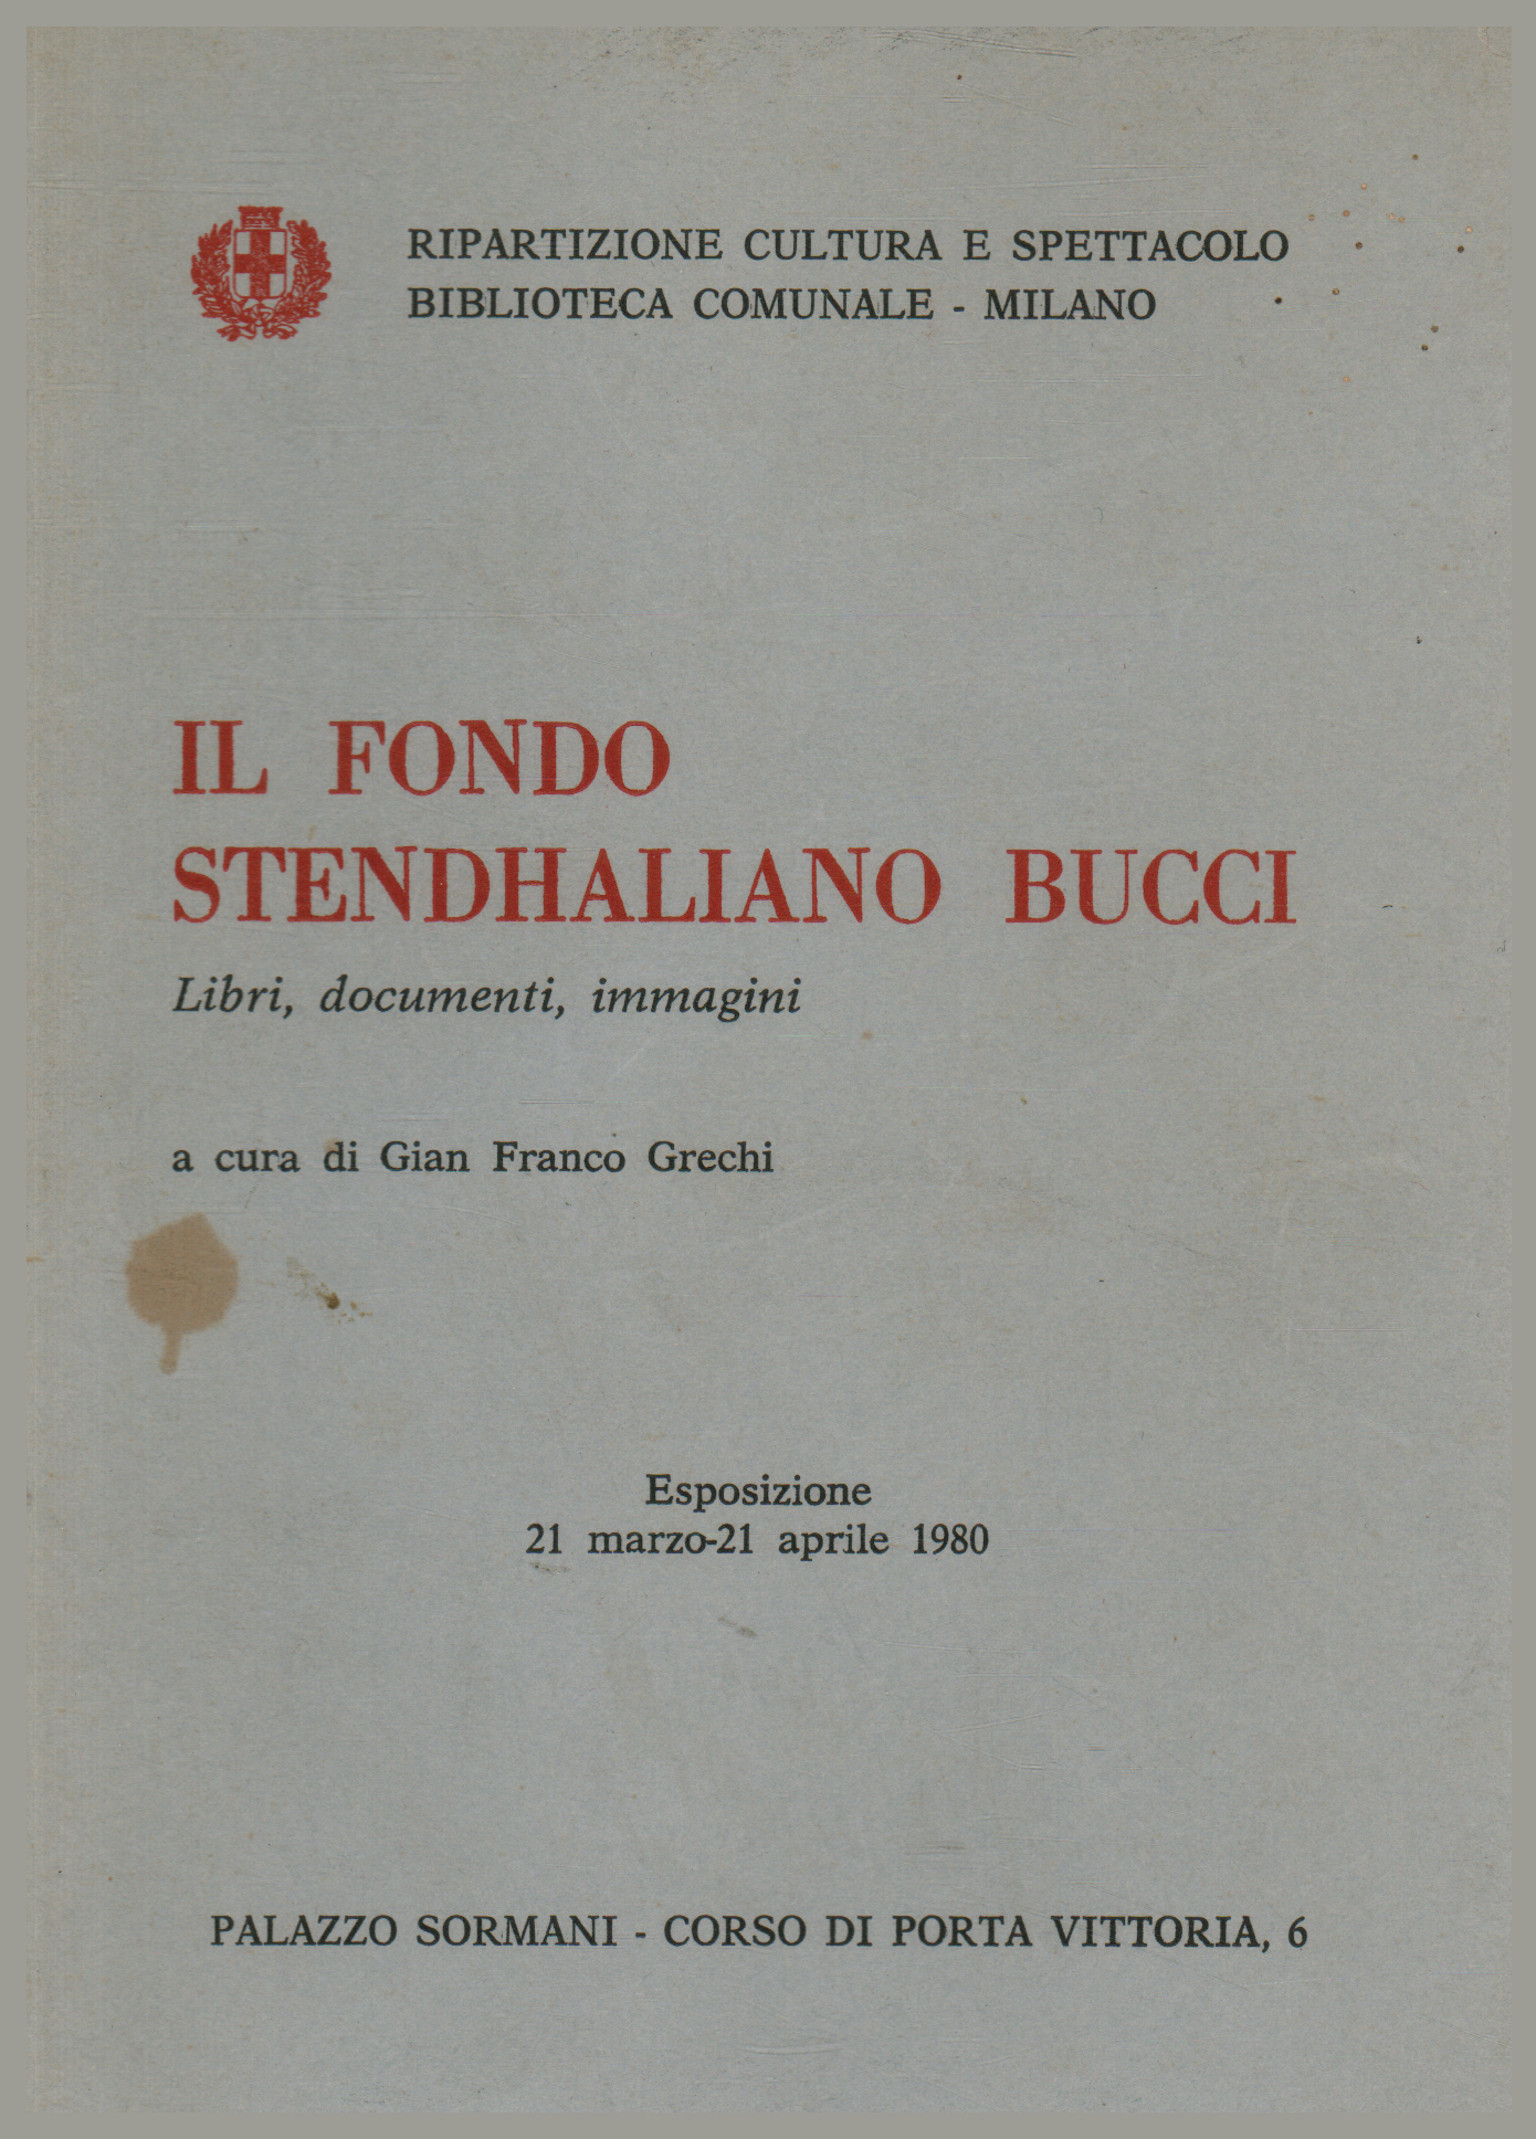 Le fonds Stendhaliano Bucci, Gian Franco Grechi